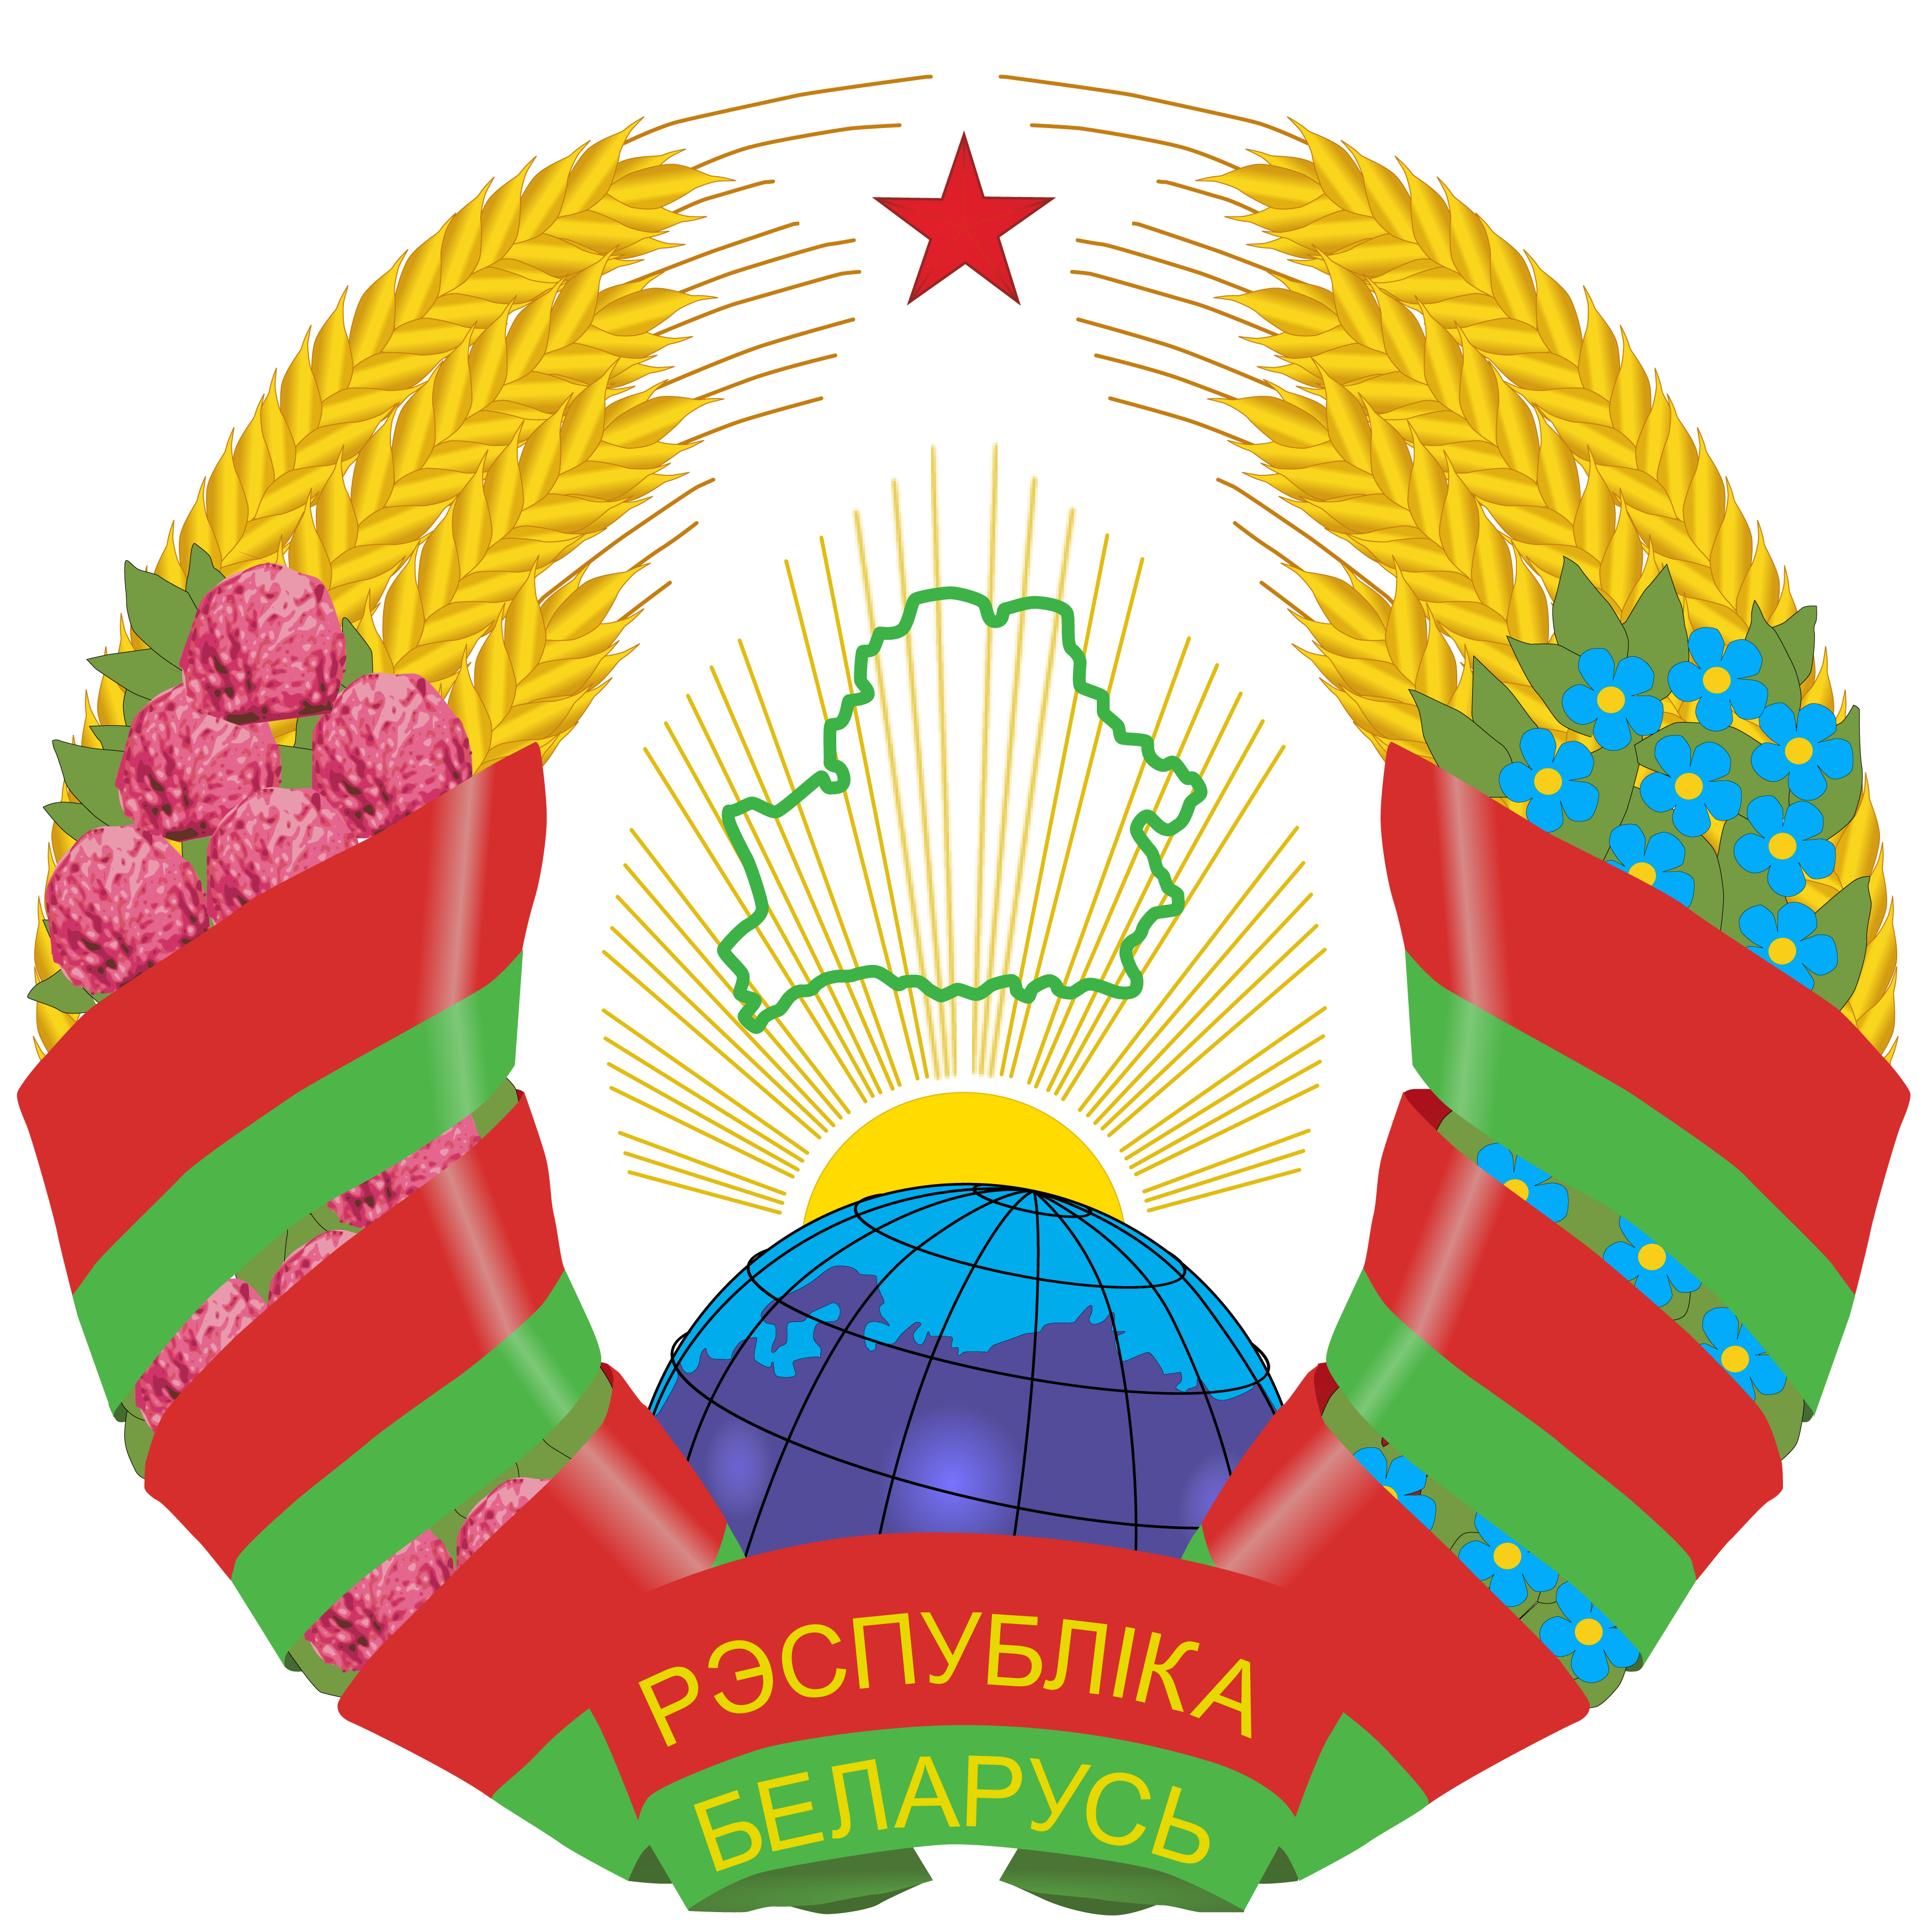 白俄羅斯國徽